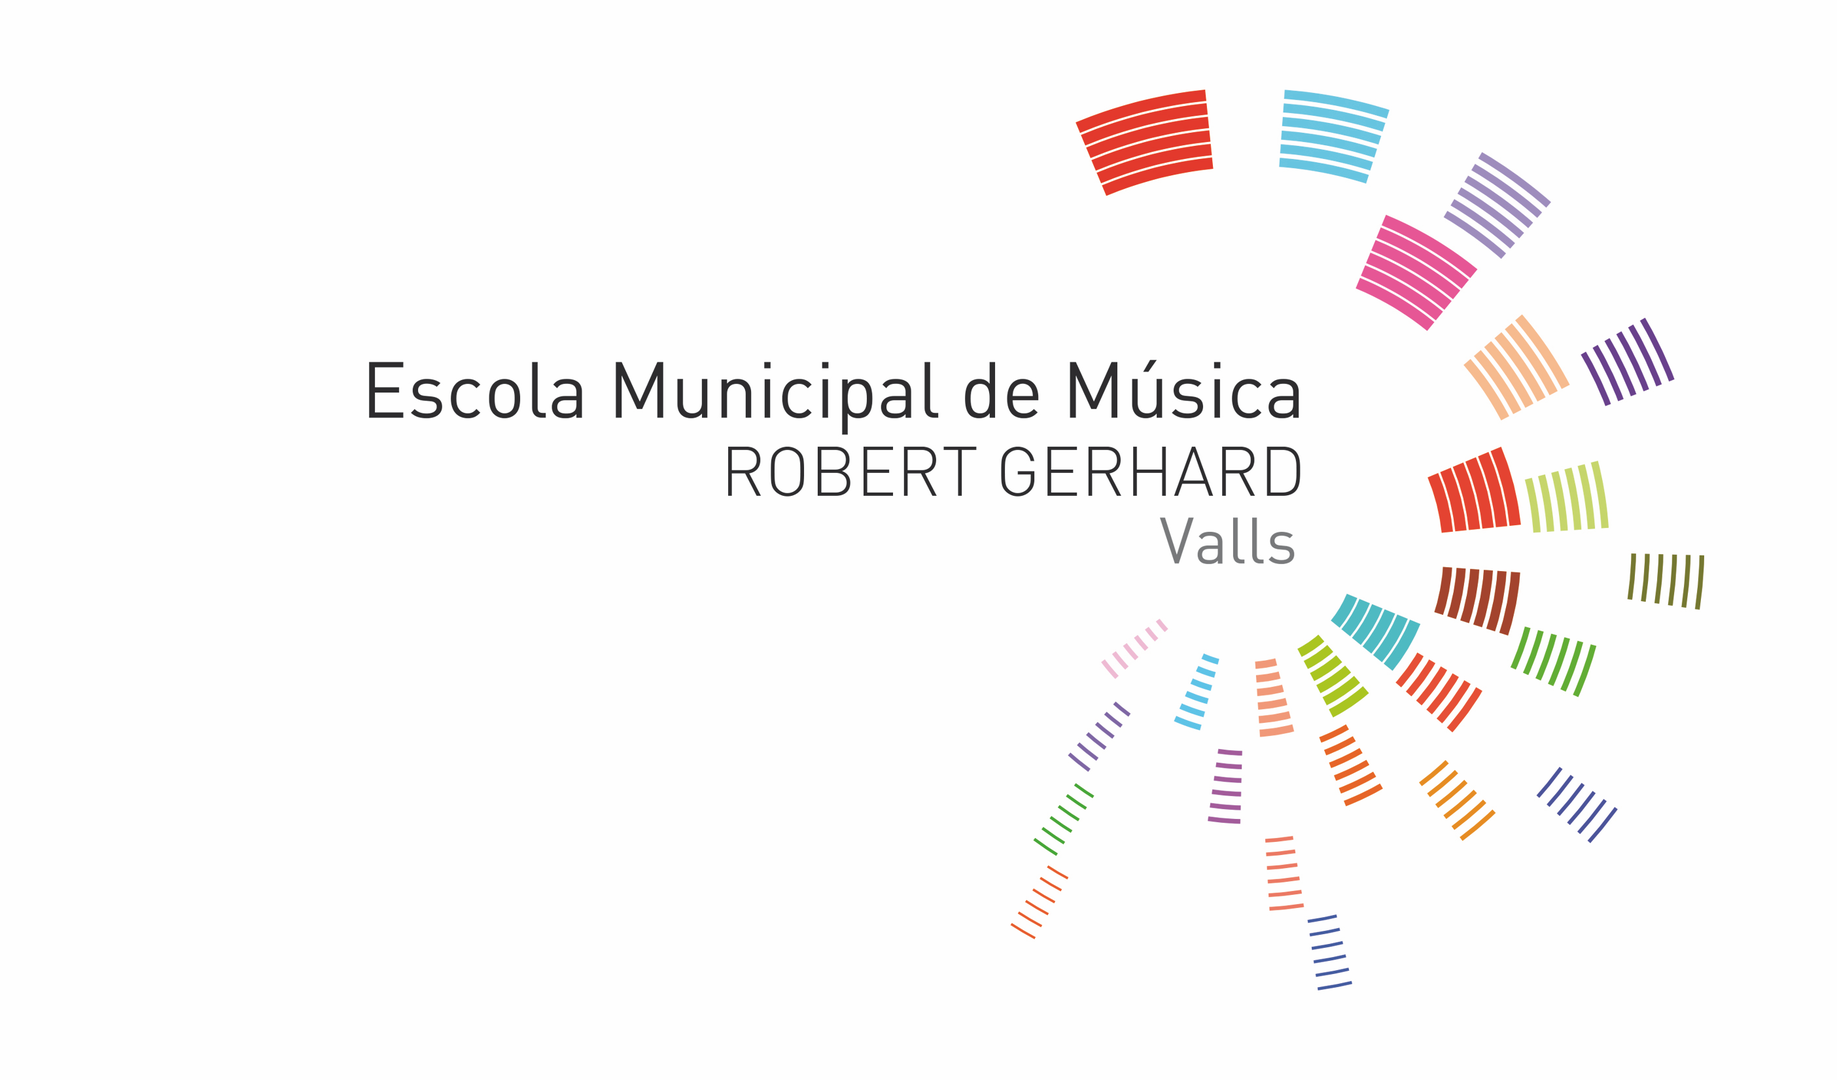 L'escola de música Robert Gerhard inicia el projecte educatiu Escola Oberta